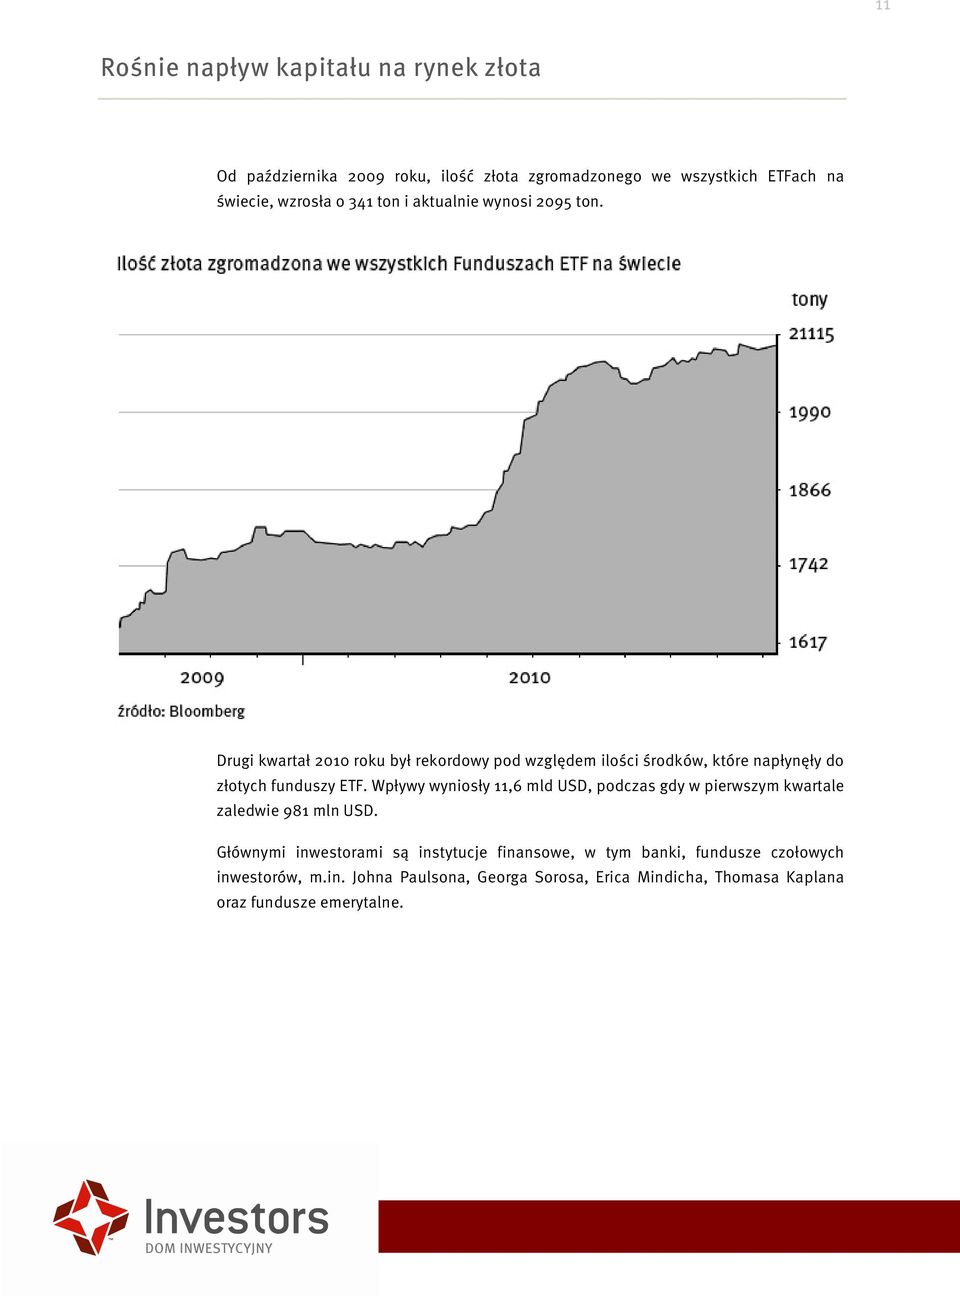 Drugi kwartał 2010 roku był rekordowy pod względem ilości środków, które napłynęły do złotych funduszy ETF.